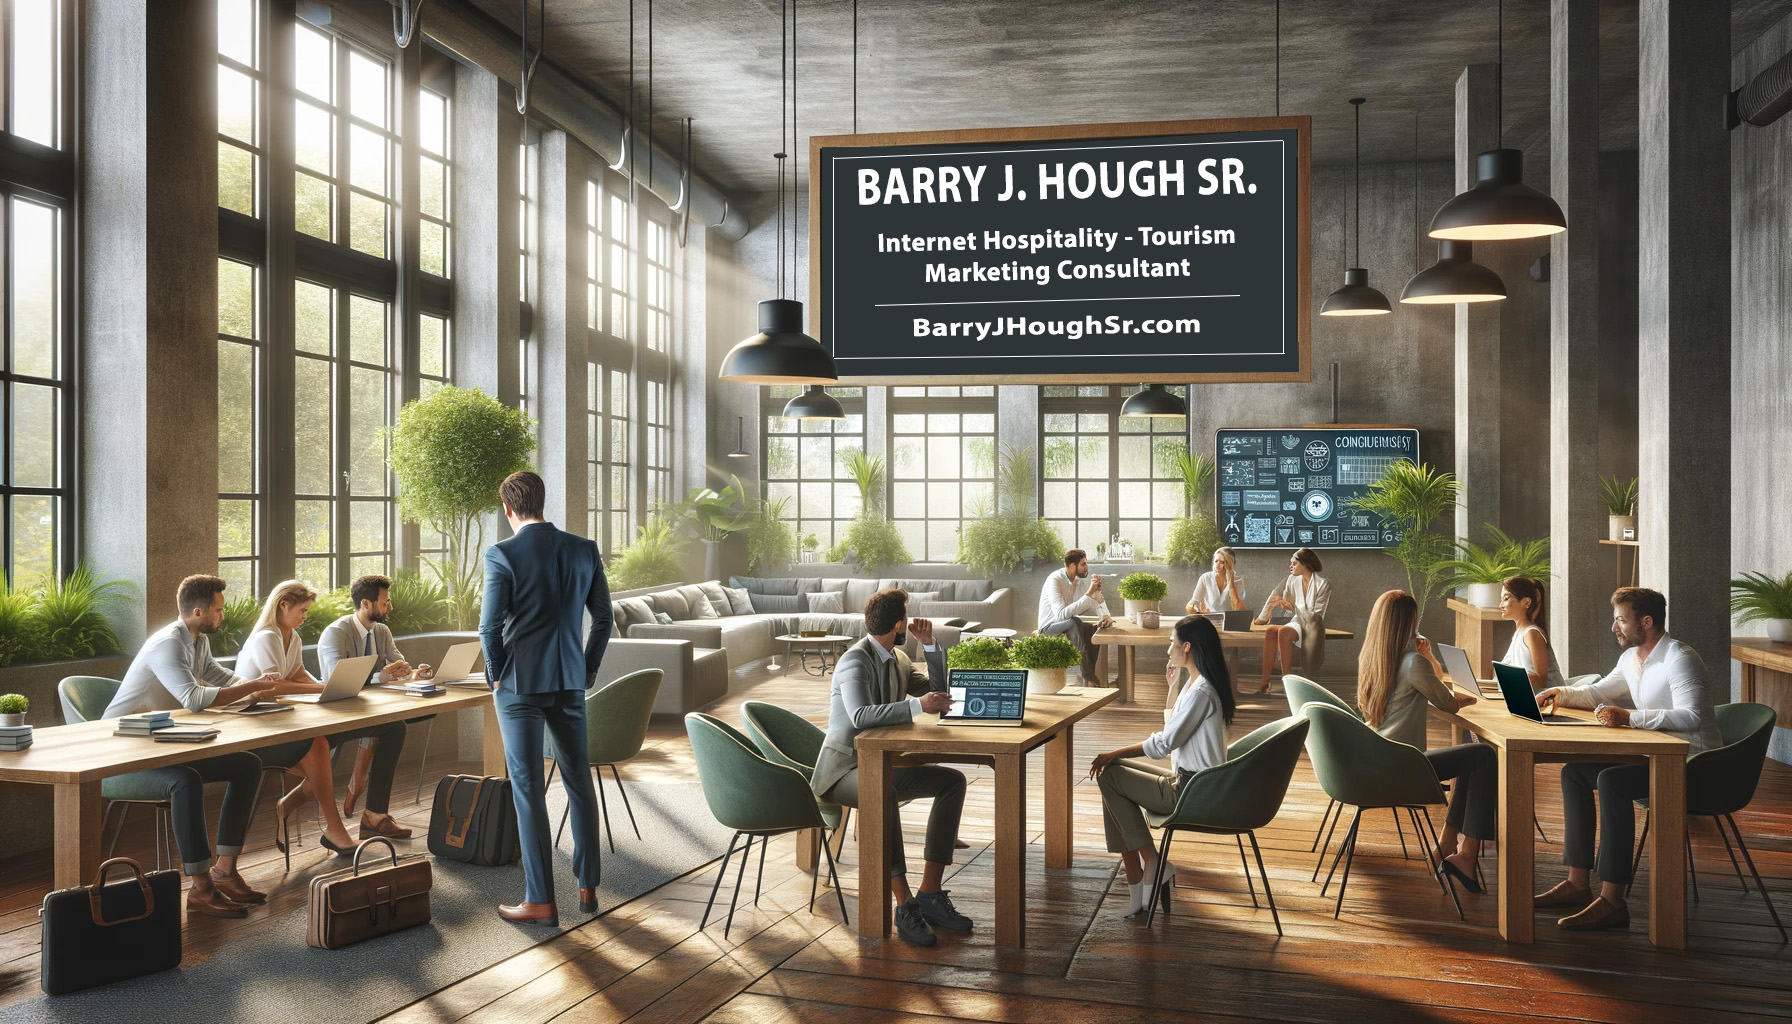 Internet Hospitality - Tourism Marketing Consultant - Barry J. Hough Sr.